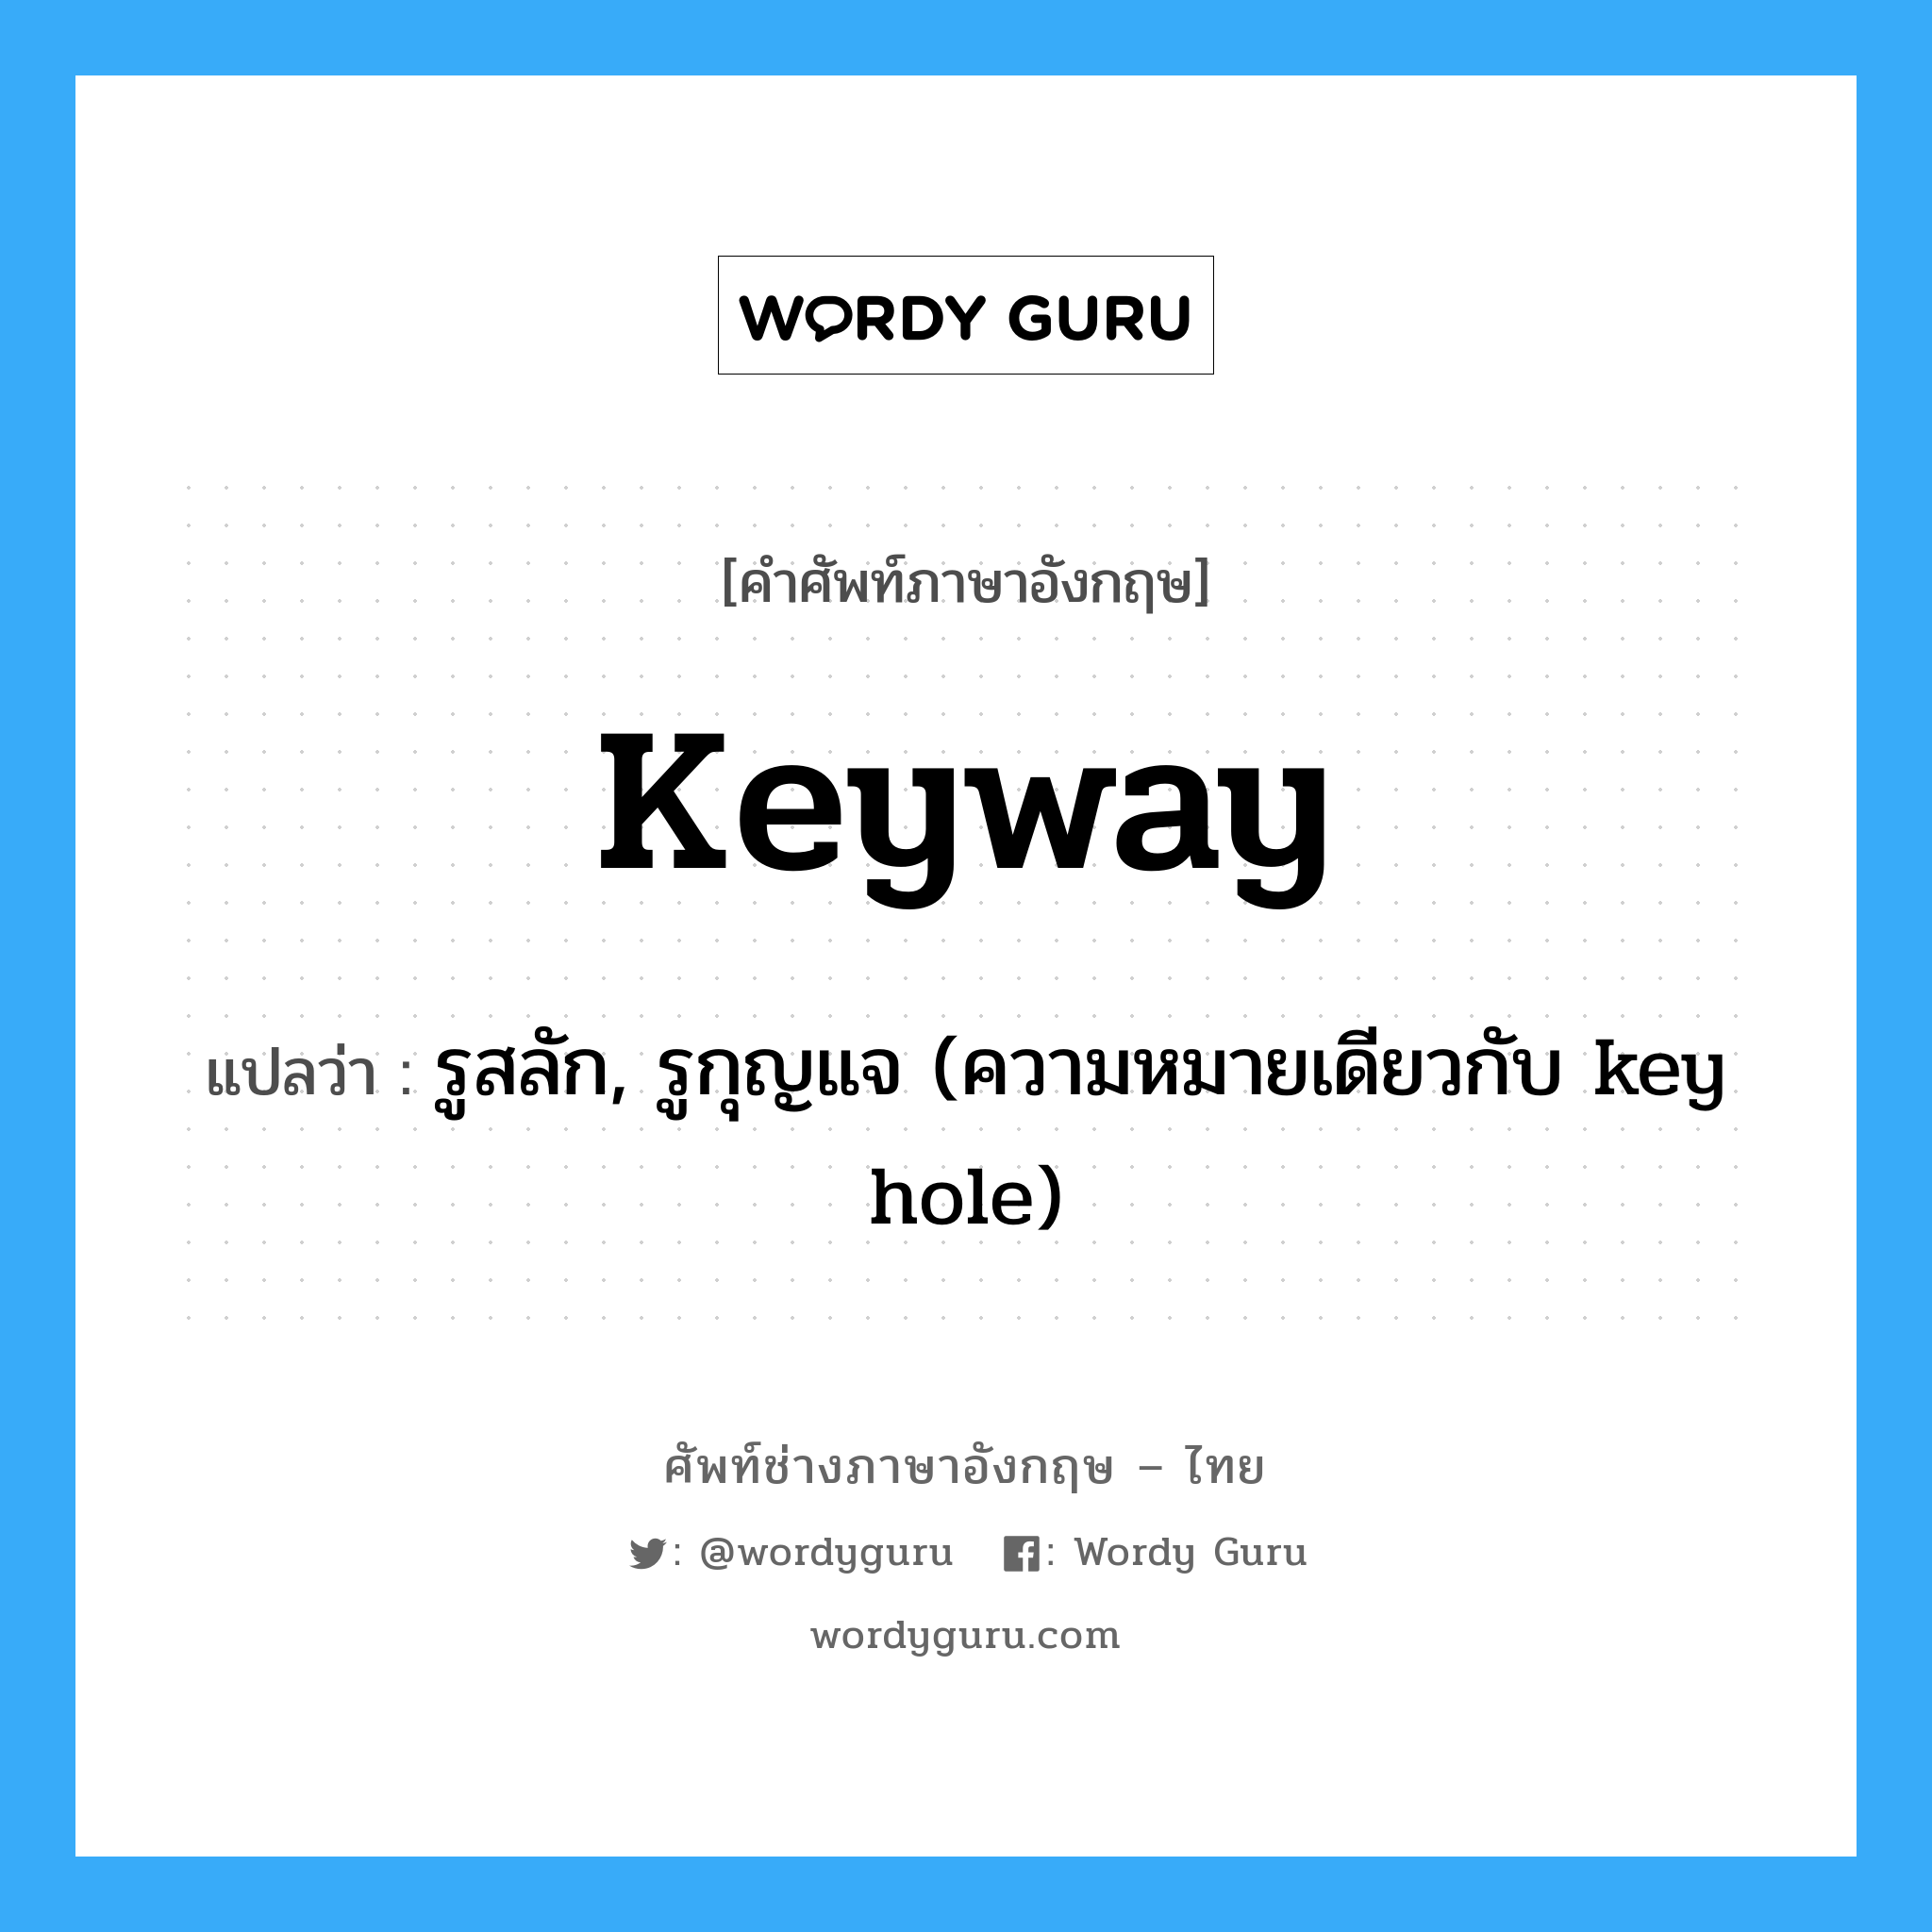 รูสลัก, รูกุญแจ (ความหมายเดียวกับ key hole) ภาษาอังกฤษ?, คำศัพท์ช่างภาษาอังกฤษ - ไทย รูสลัก, รูกุญแจ (ความหมายเดียวกับ key hole) คำศัพท์ภาษาอังกฤษ รูสลัก, รูกุญแจ (ความหมายเดียวกับ key hole) แปลว่า keyway